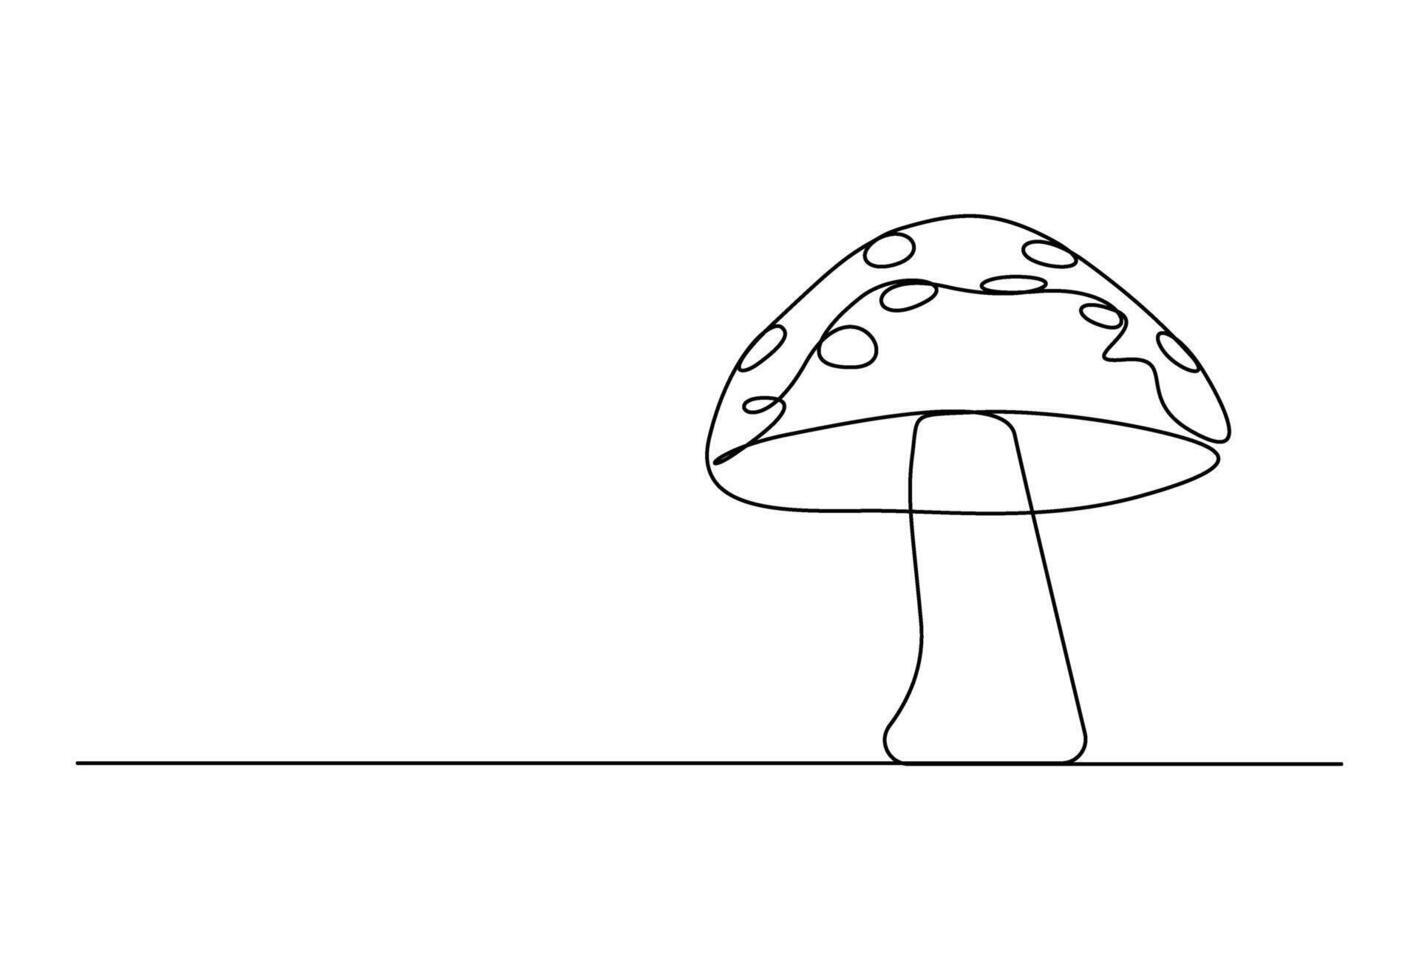 svamp i ett kontinuerlig linje teckning vektor illustration. proffs vektor